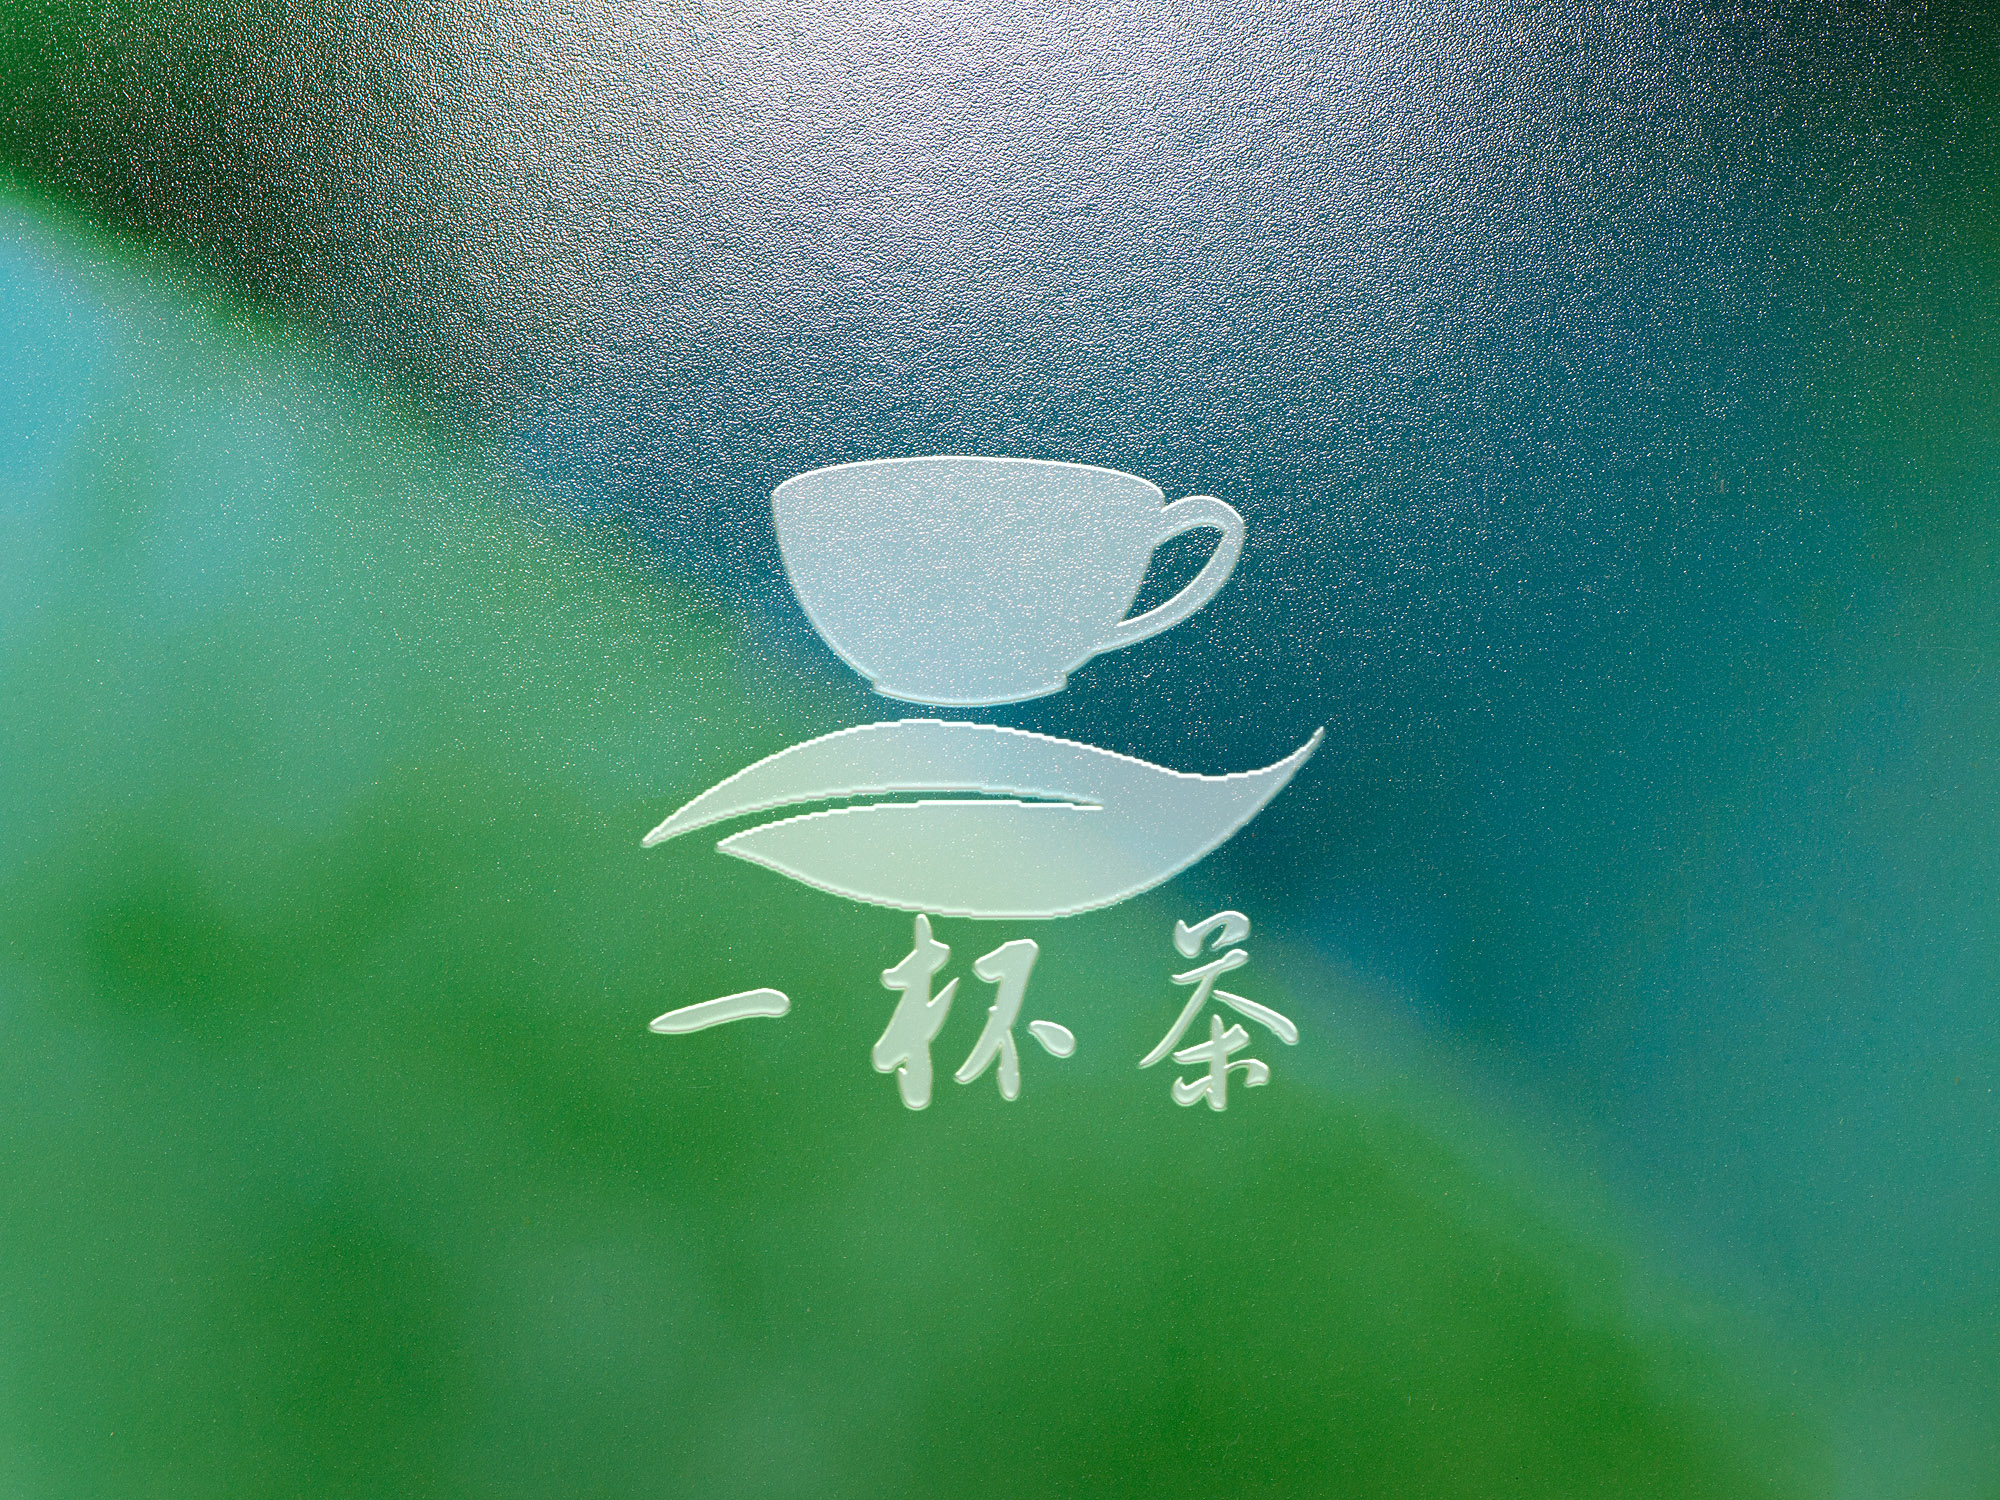 茶店logo版权郑州/平面设计师/4年前/229浏览